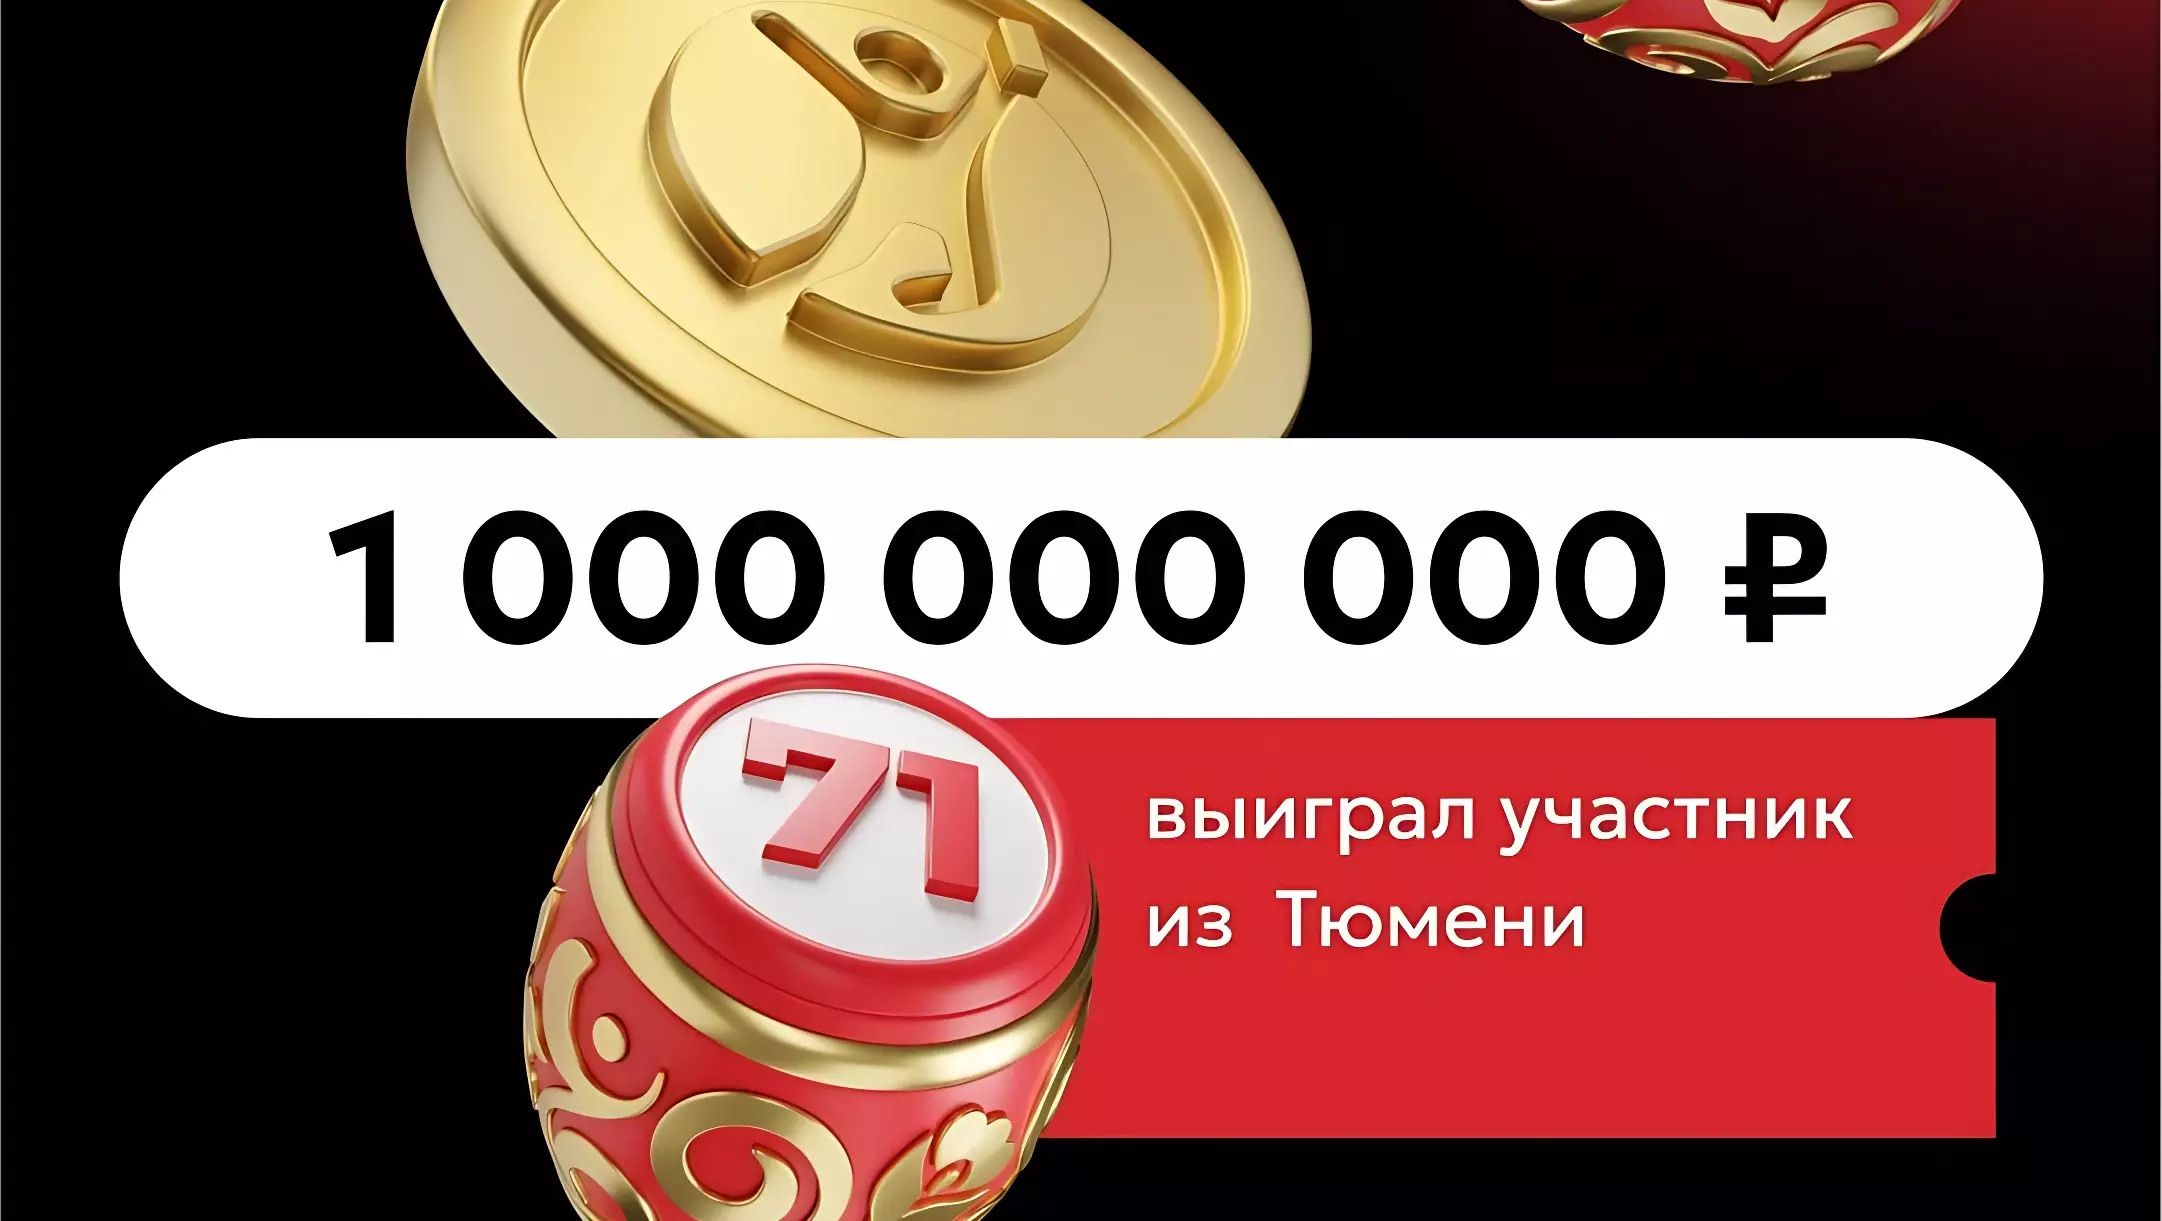 Согласно «Столото», участник из Тюмени выиграл 1 млрд рублей.